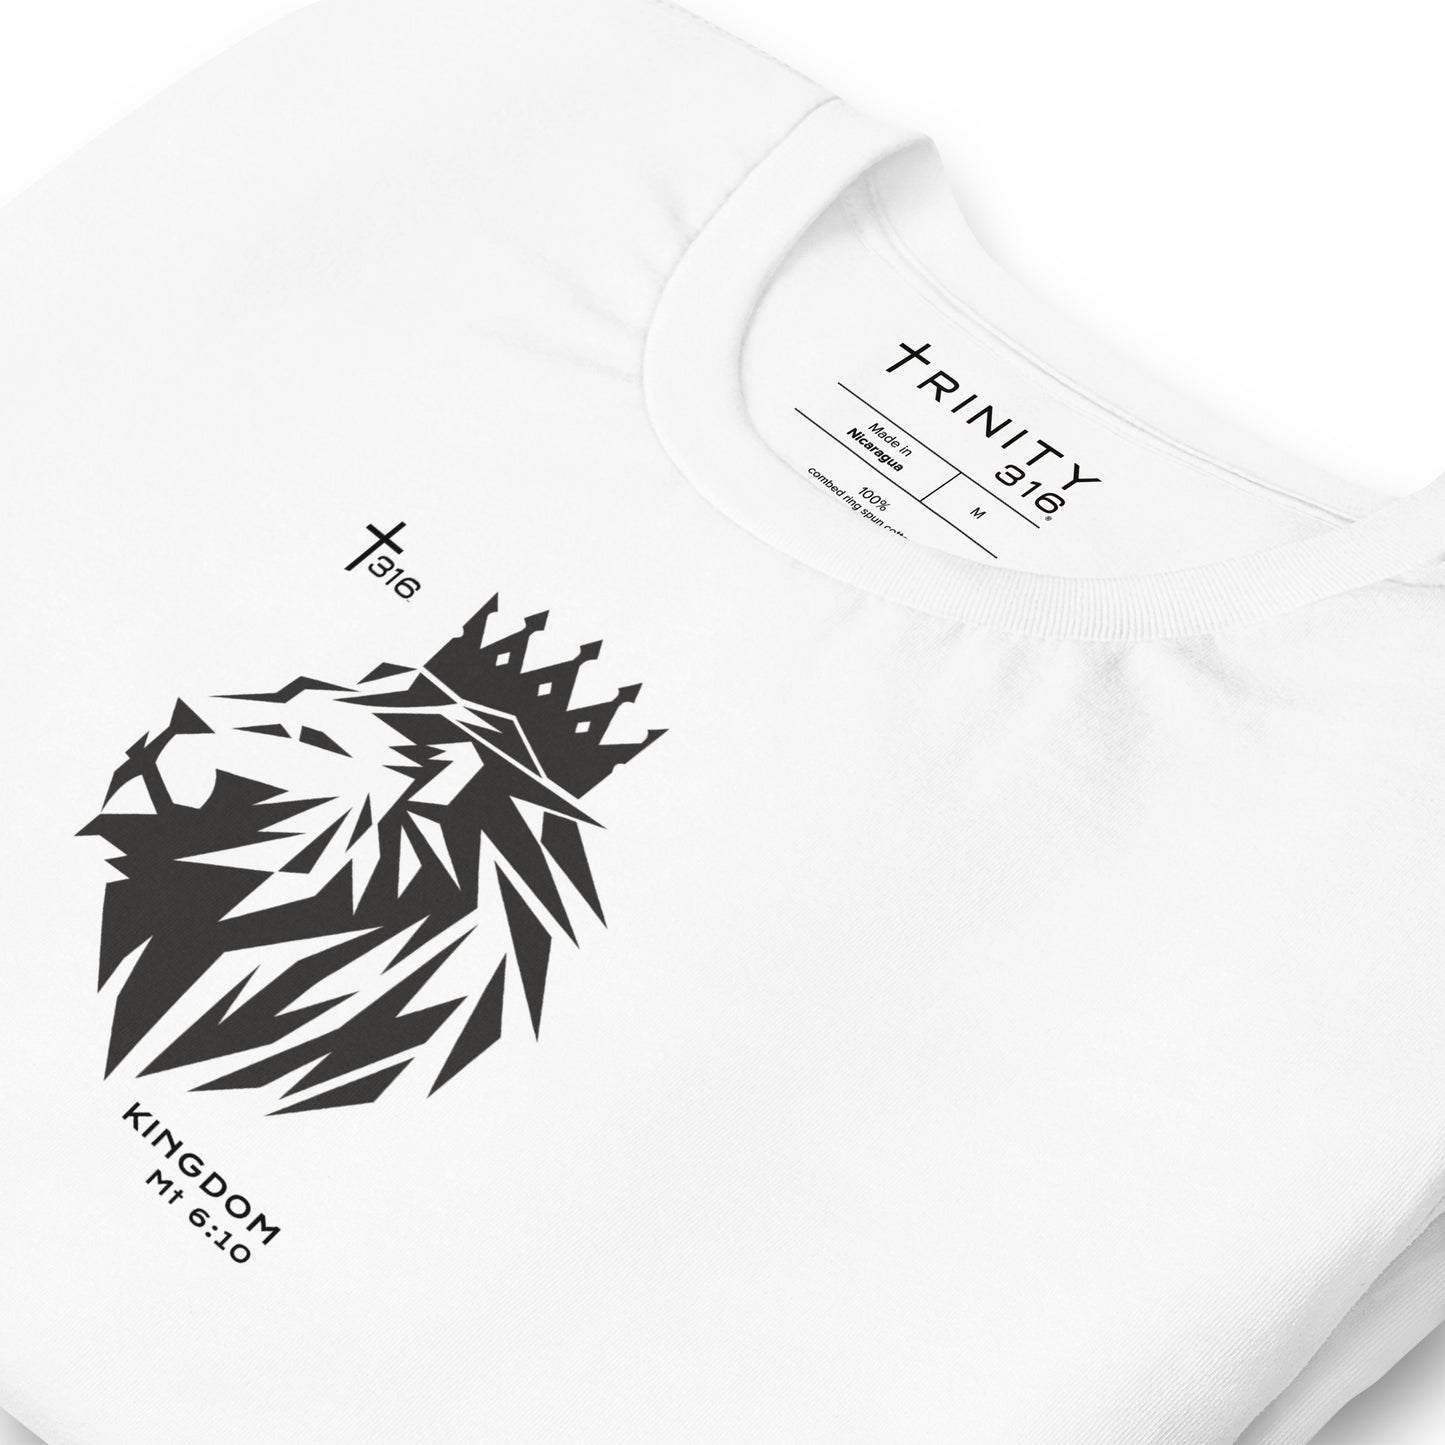 Trinity 316 T-Shirt | KINGDOM - White